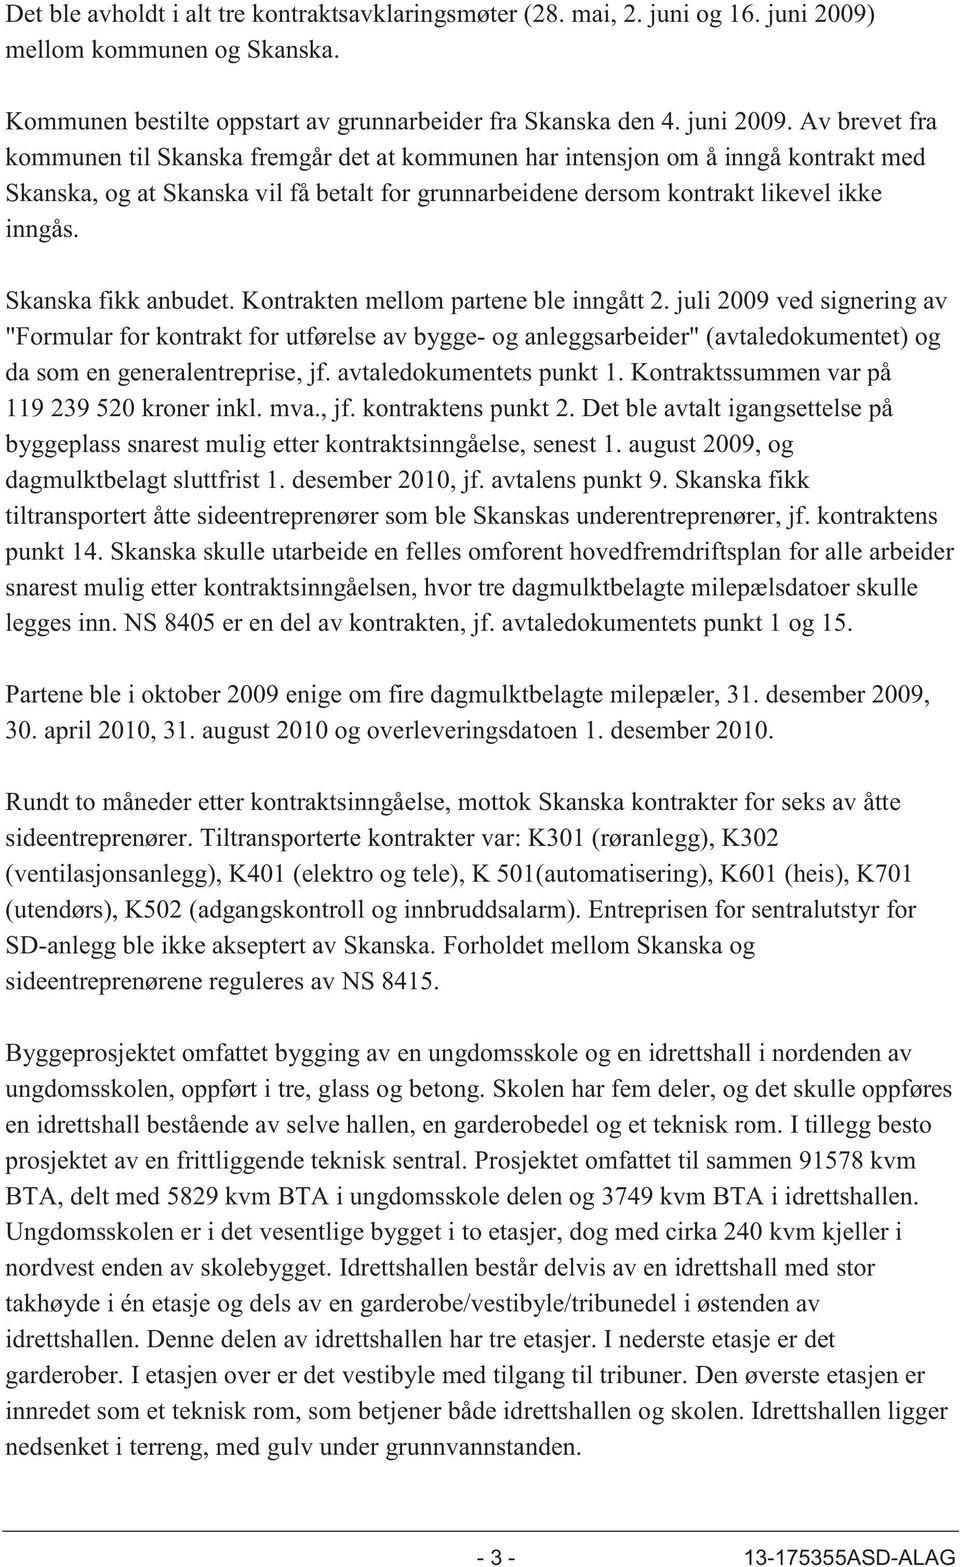 Av brevet fra kommunen til Skanska fremgår det at kommunen har intensjon om å inngå kontrakt med Skanska, og at Skanska vil få betalt for grunnarbeidene dersom kontrakt likevel ikke inngås.